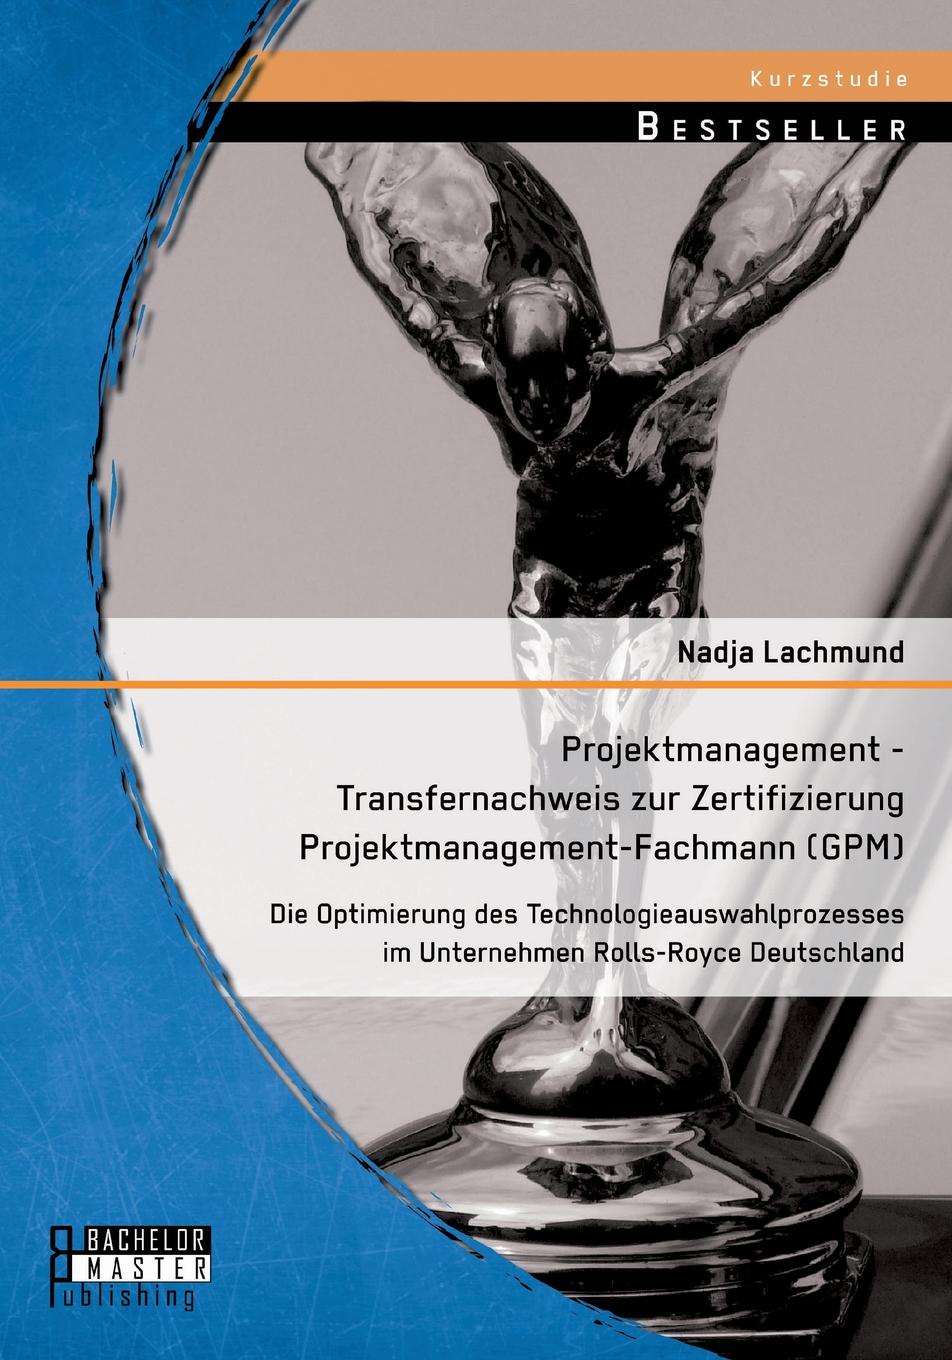 Projektmanagement - Transfernachweis zur Zertifizierung Projektmanagement-Fachmann (GPM). Die Optimierung des Technologieauswahlprozesses im Unternehmen Rolls-Royce Deutschland